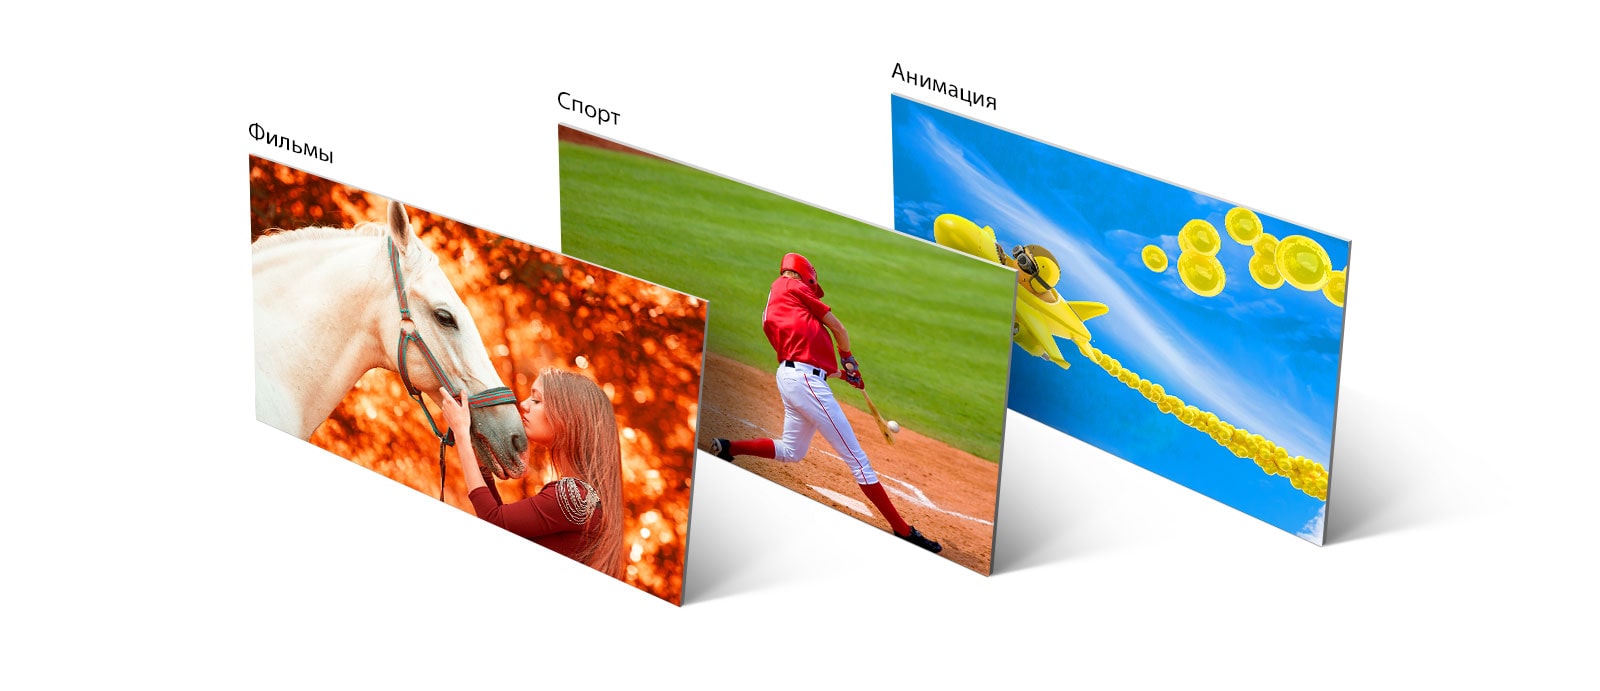 Три изображения: на одном показаны девочки, ласкающие лошадь, на втором — бейсболист, отбивающий мяч, на третьем — анимированное изображение летящего в небе самолета.